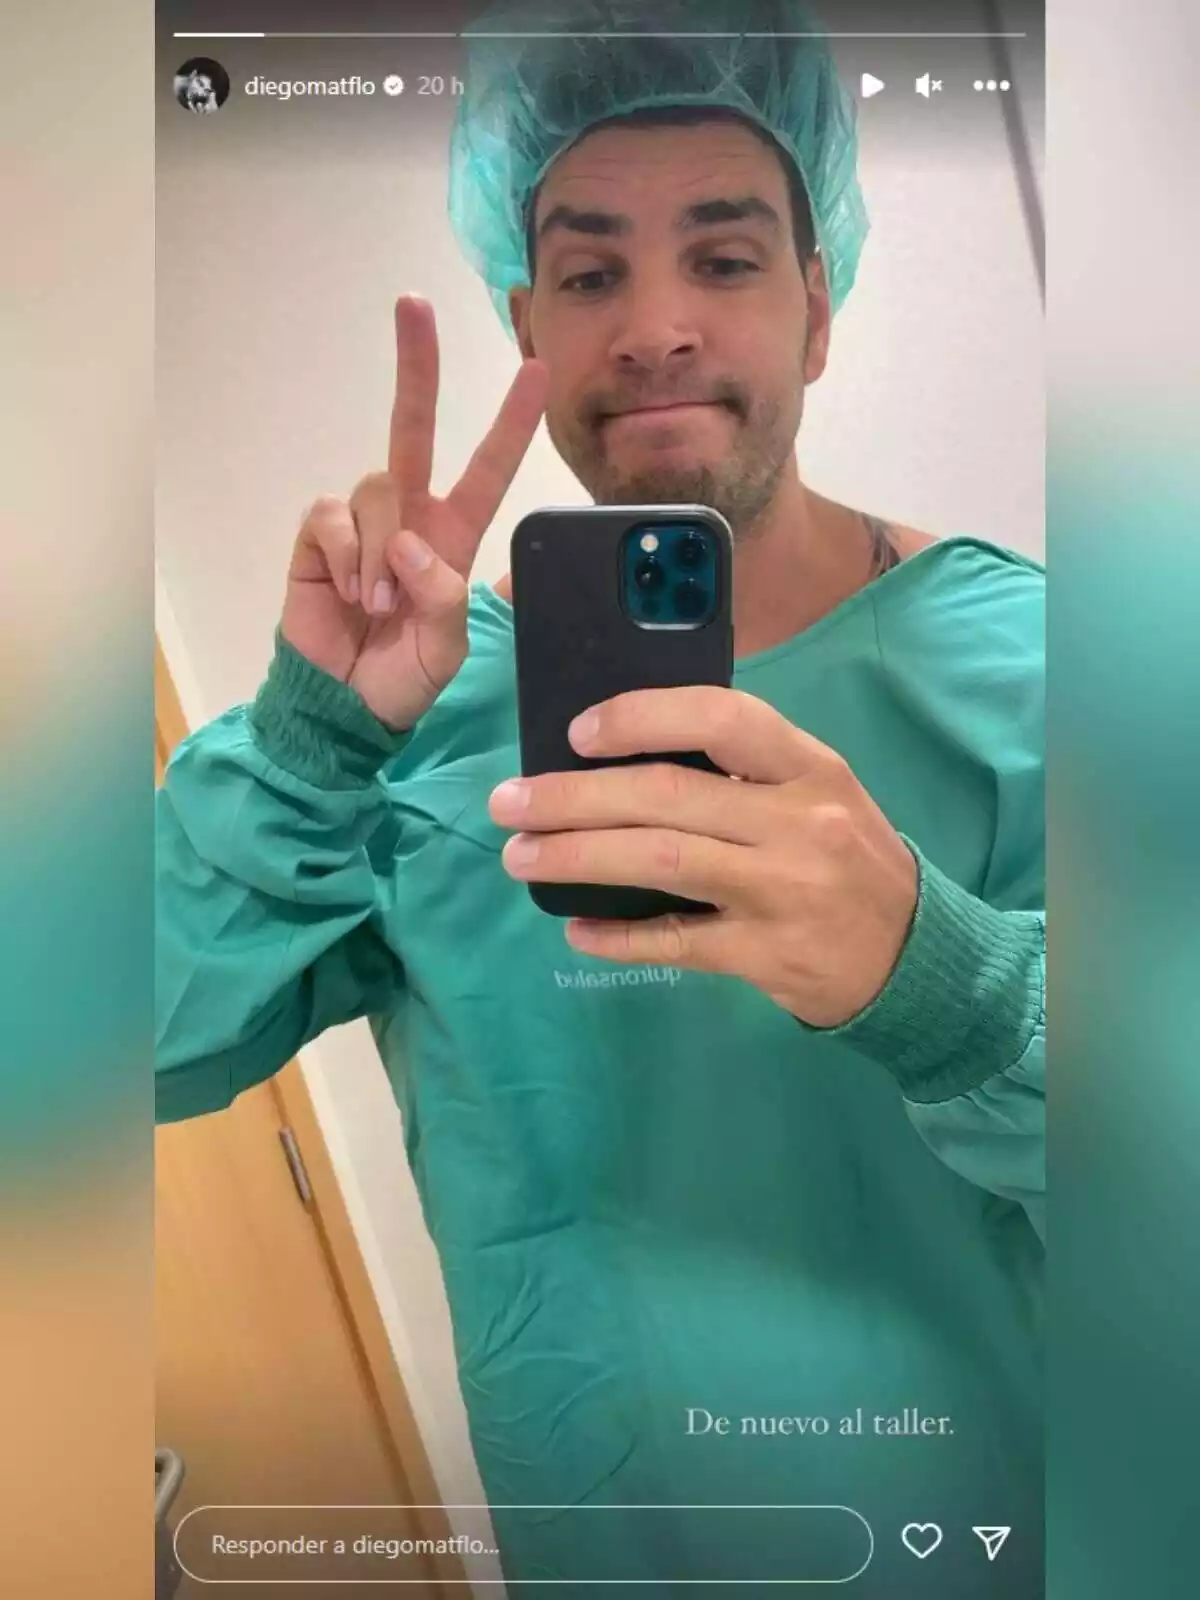 Storie de Diego Matamoros, vestit de bata d'hospital, mostrant que està ingressat de nou